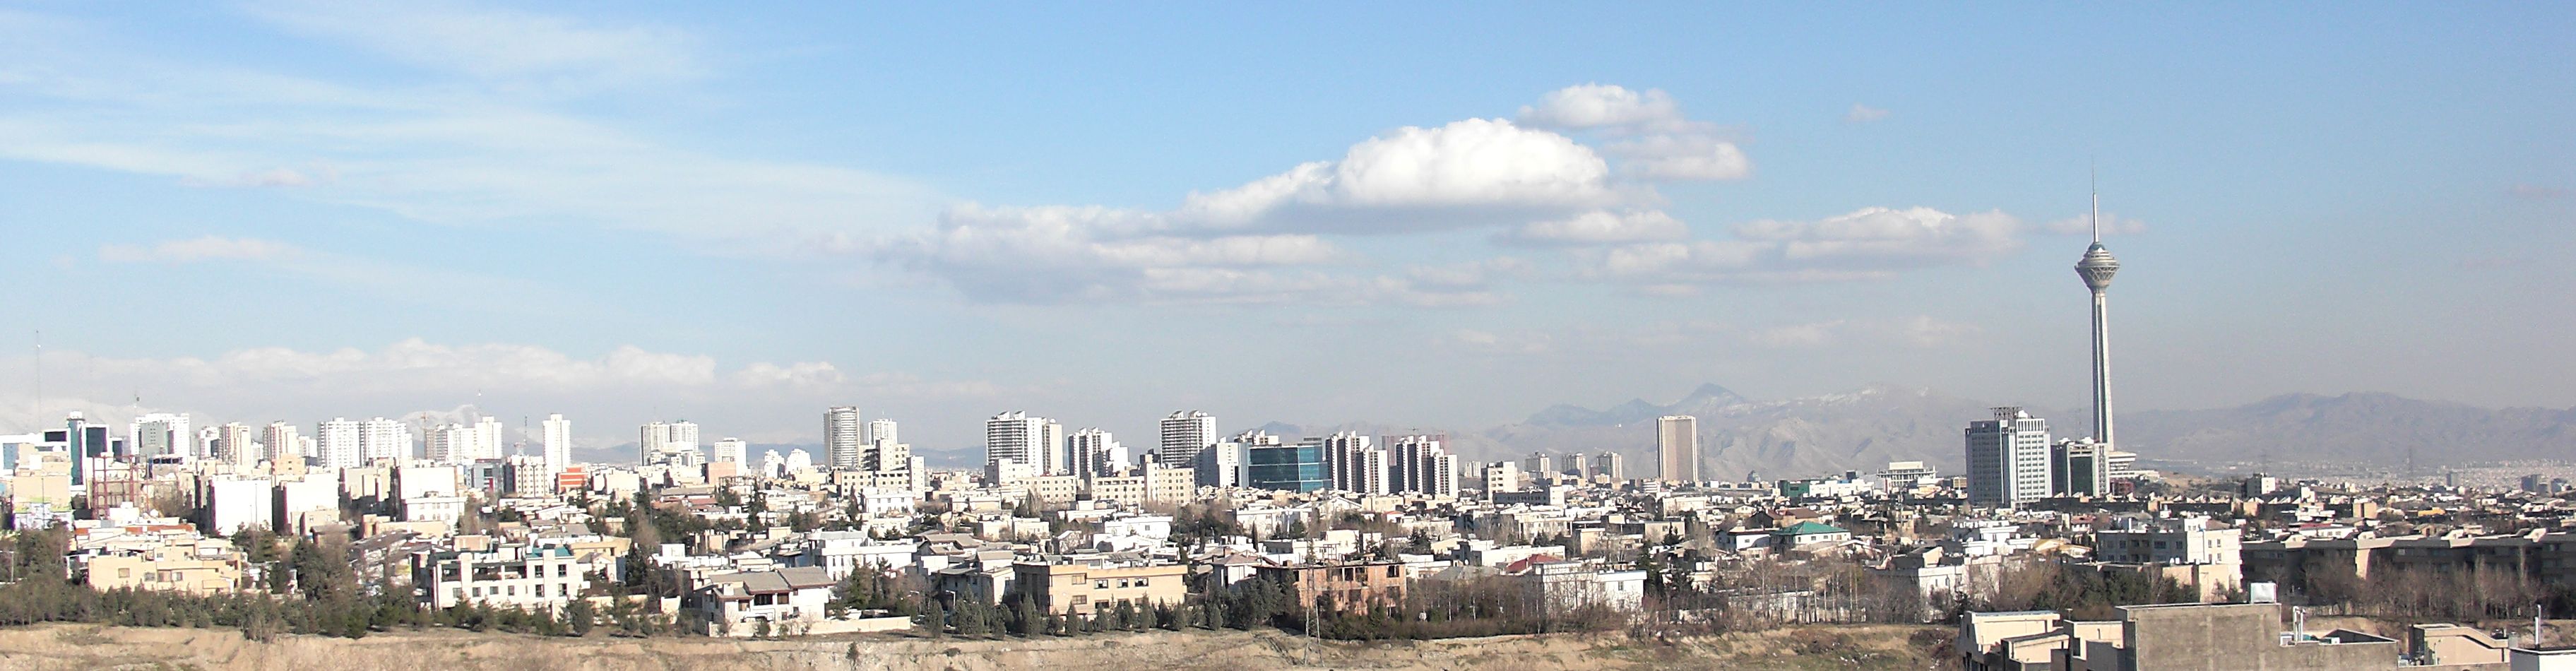 کاهش ساخت مسکن در تهران و افزایش آمارها در شمال